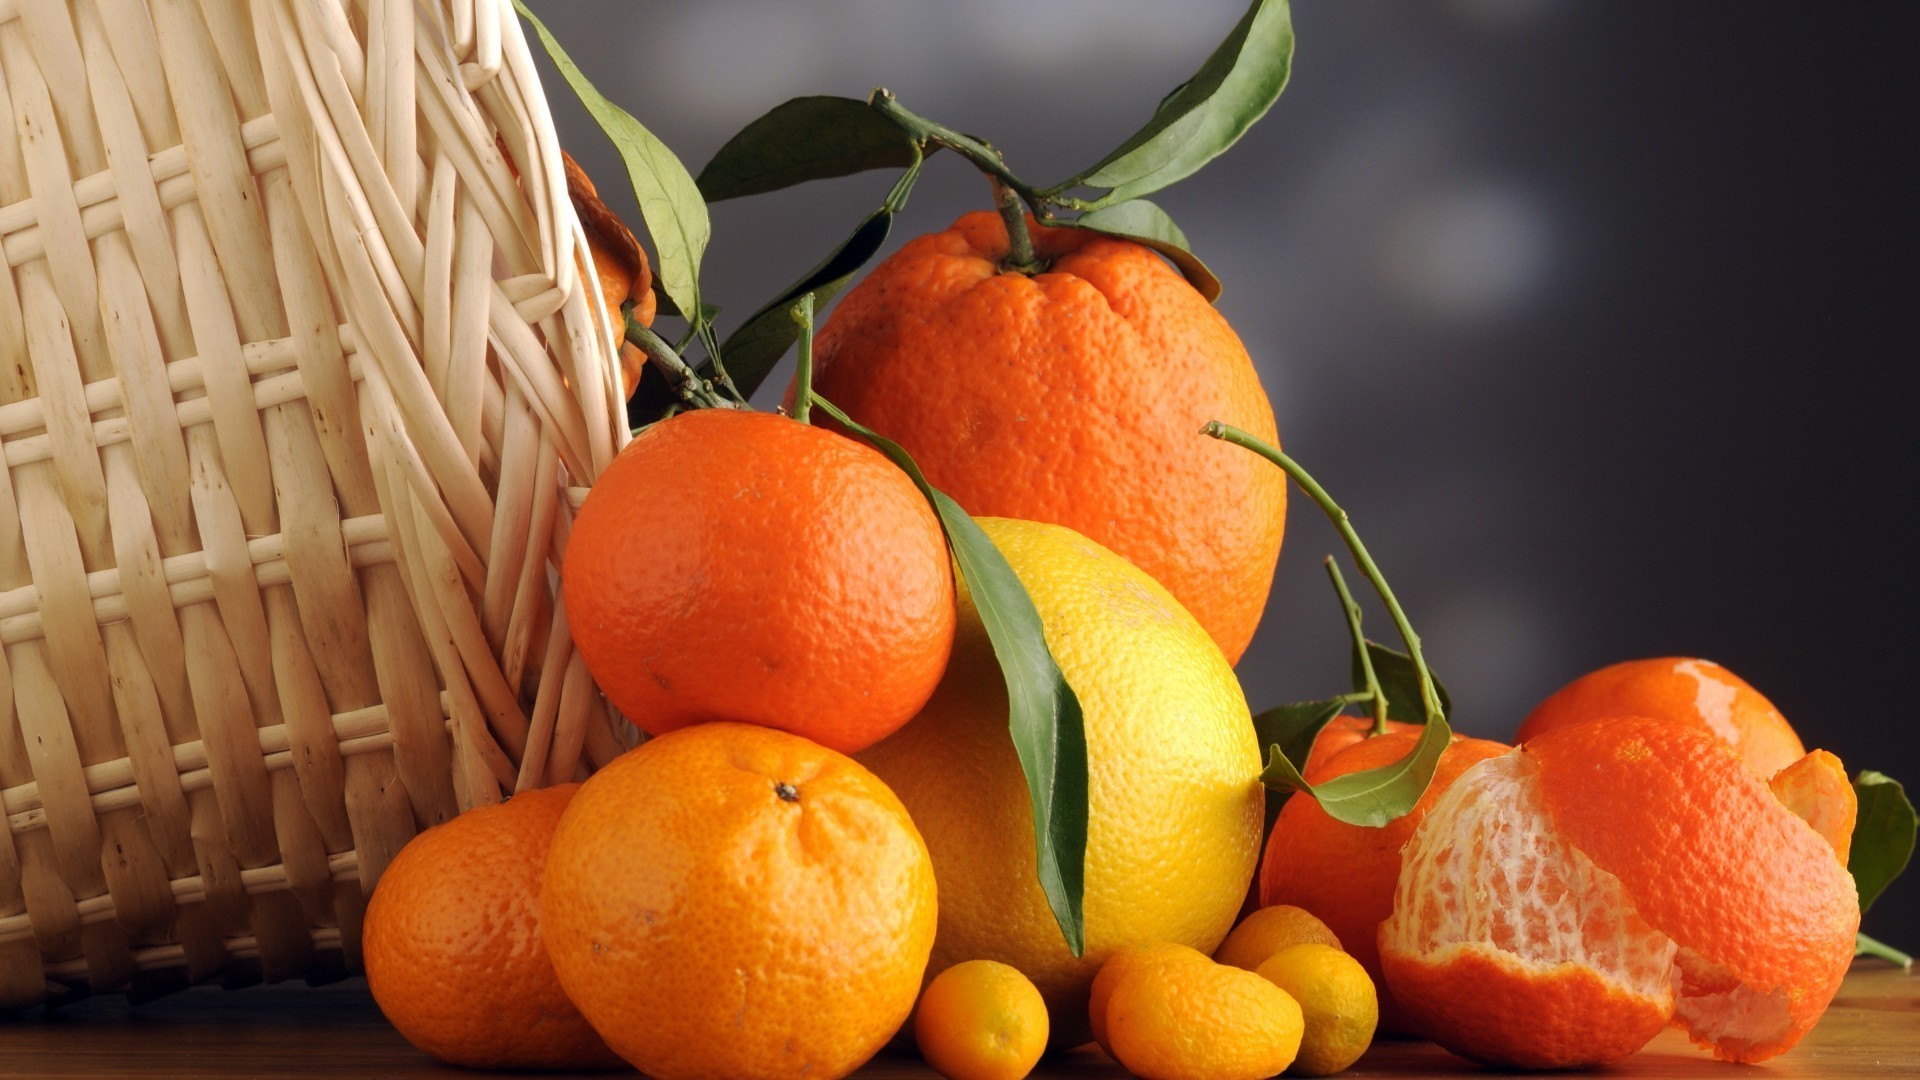 фрукты еда цитрусовые мандарин мандариновый сочные здоровья кондитерское изделие здоровый сок лист рынок тропический сельское хозяйство питание